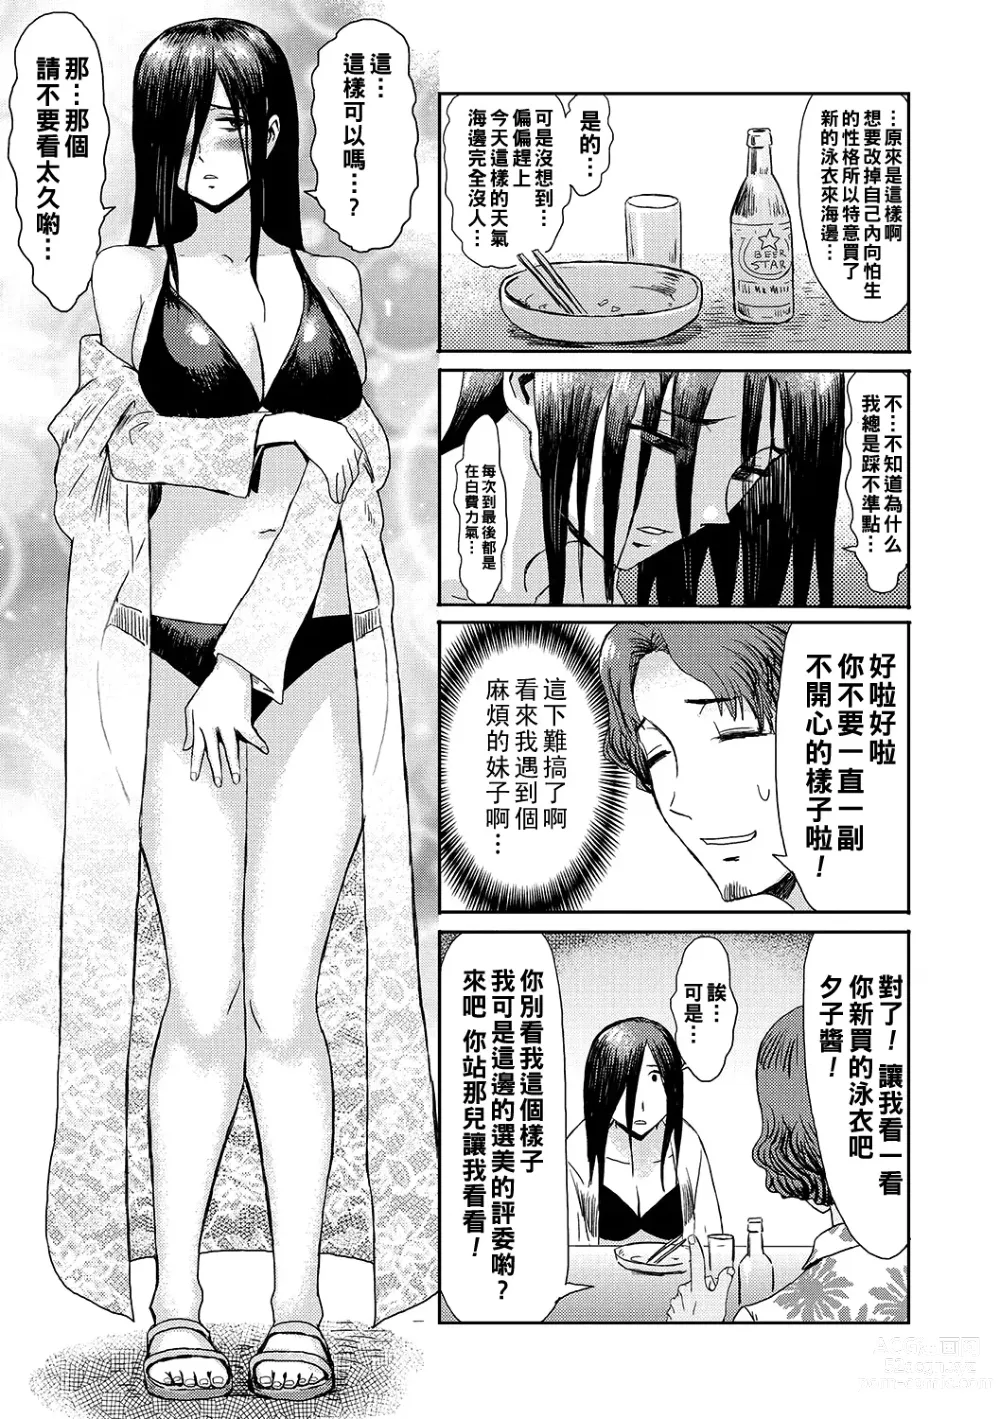 Page 3 of manga Natsu no Shiosai